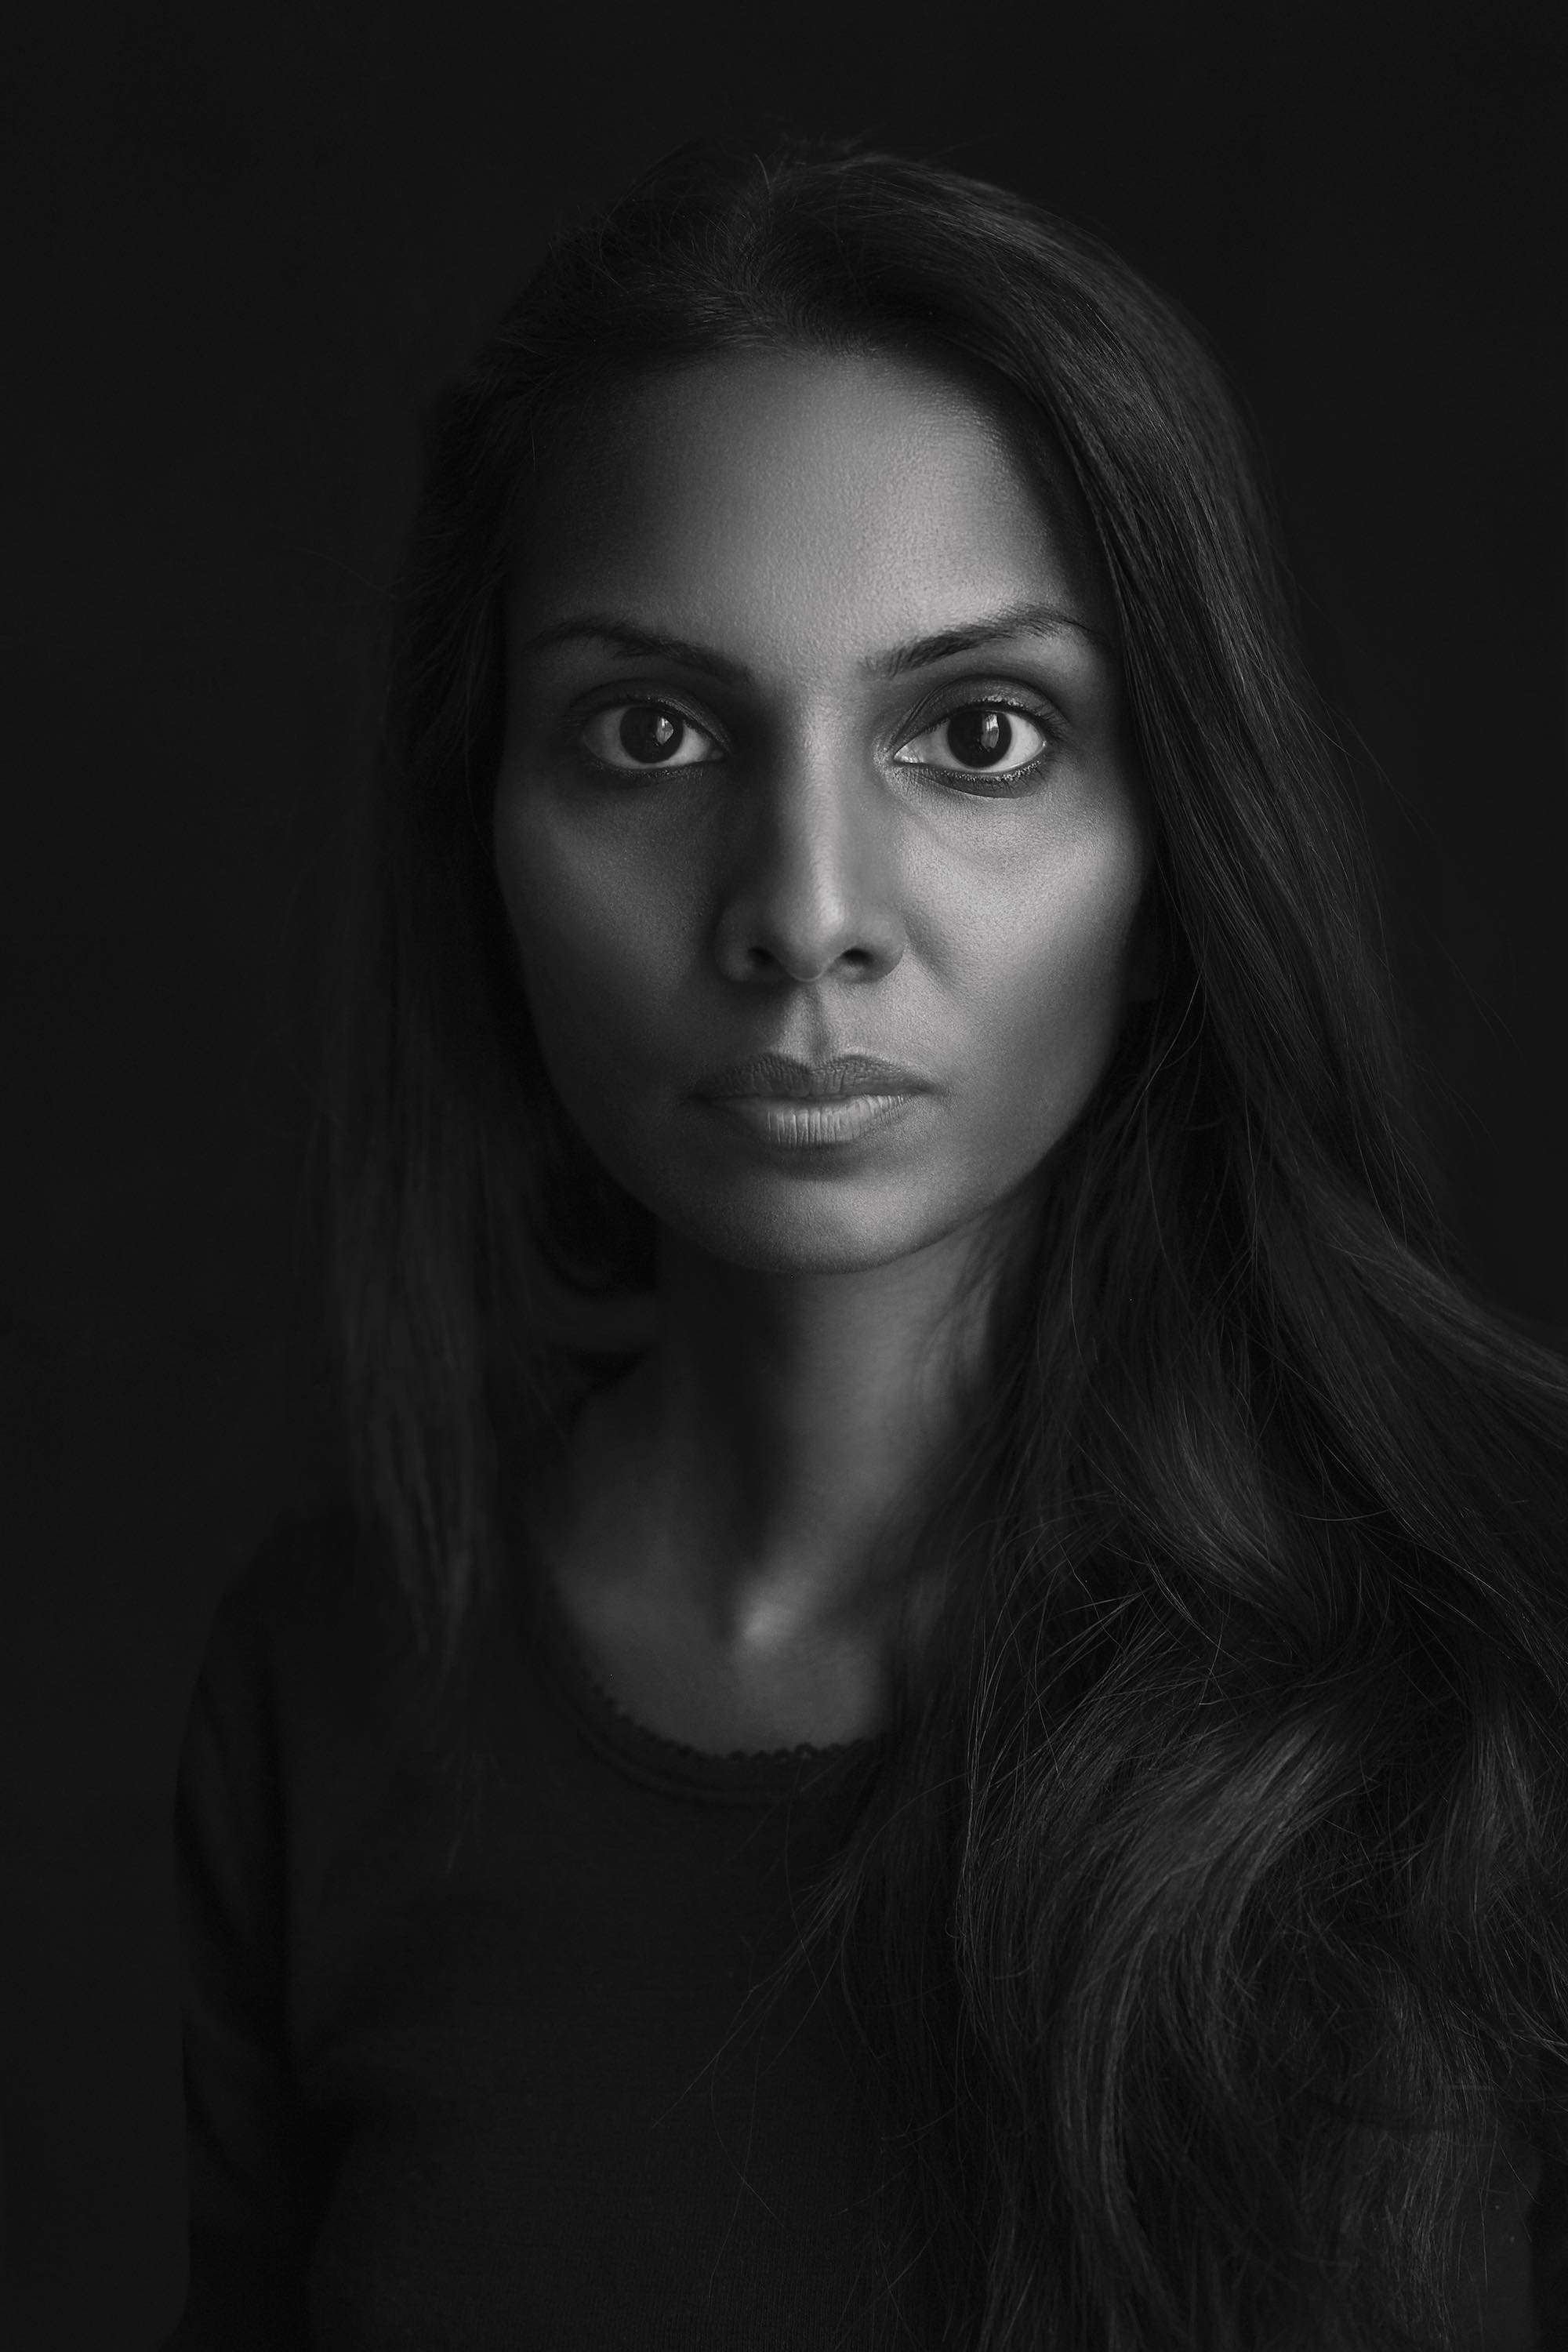 Portrait-Photography-services-singapore-photographer-black-and-white-2-Shanthi_Jeuland-